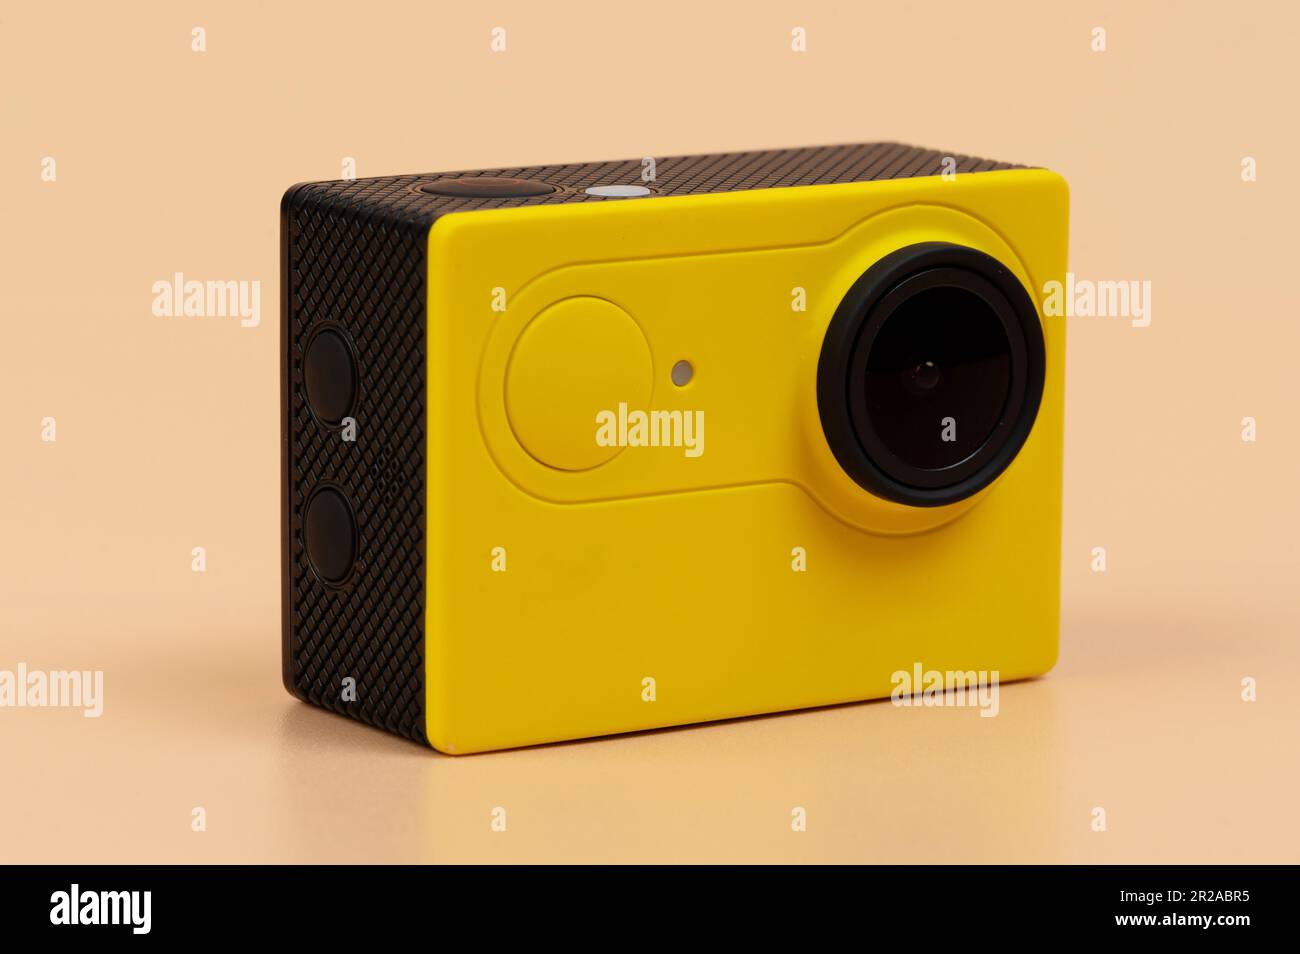 Telecamera sportiva ad alta definizione gialla isolata su sfondo marrone Foto Stock